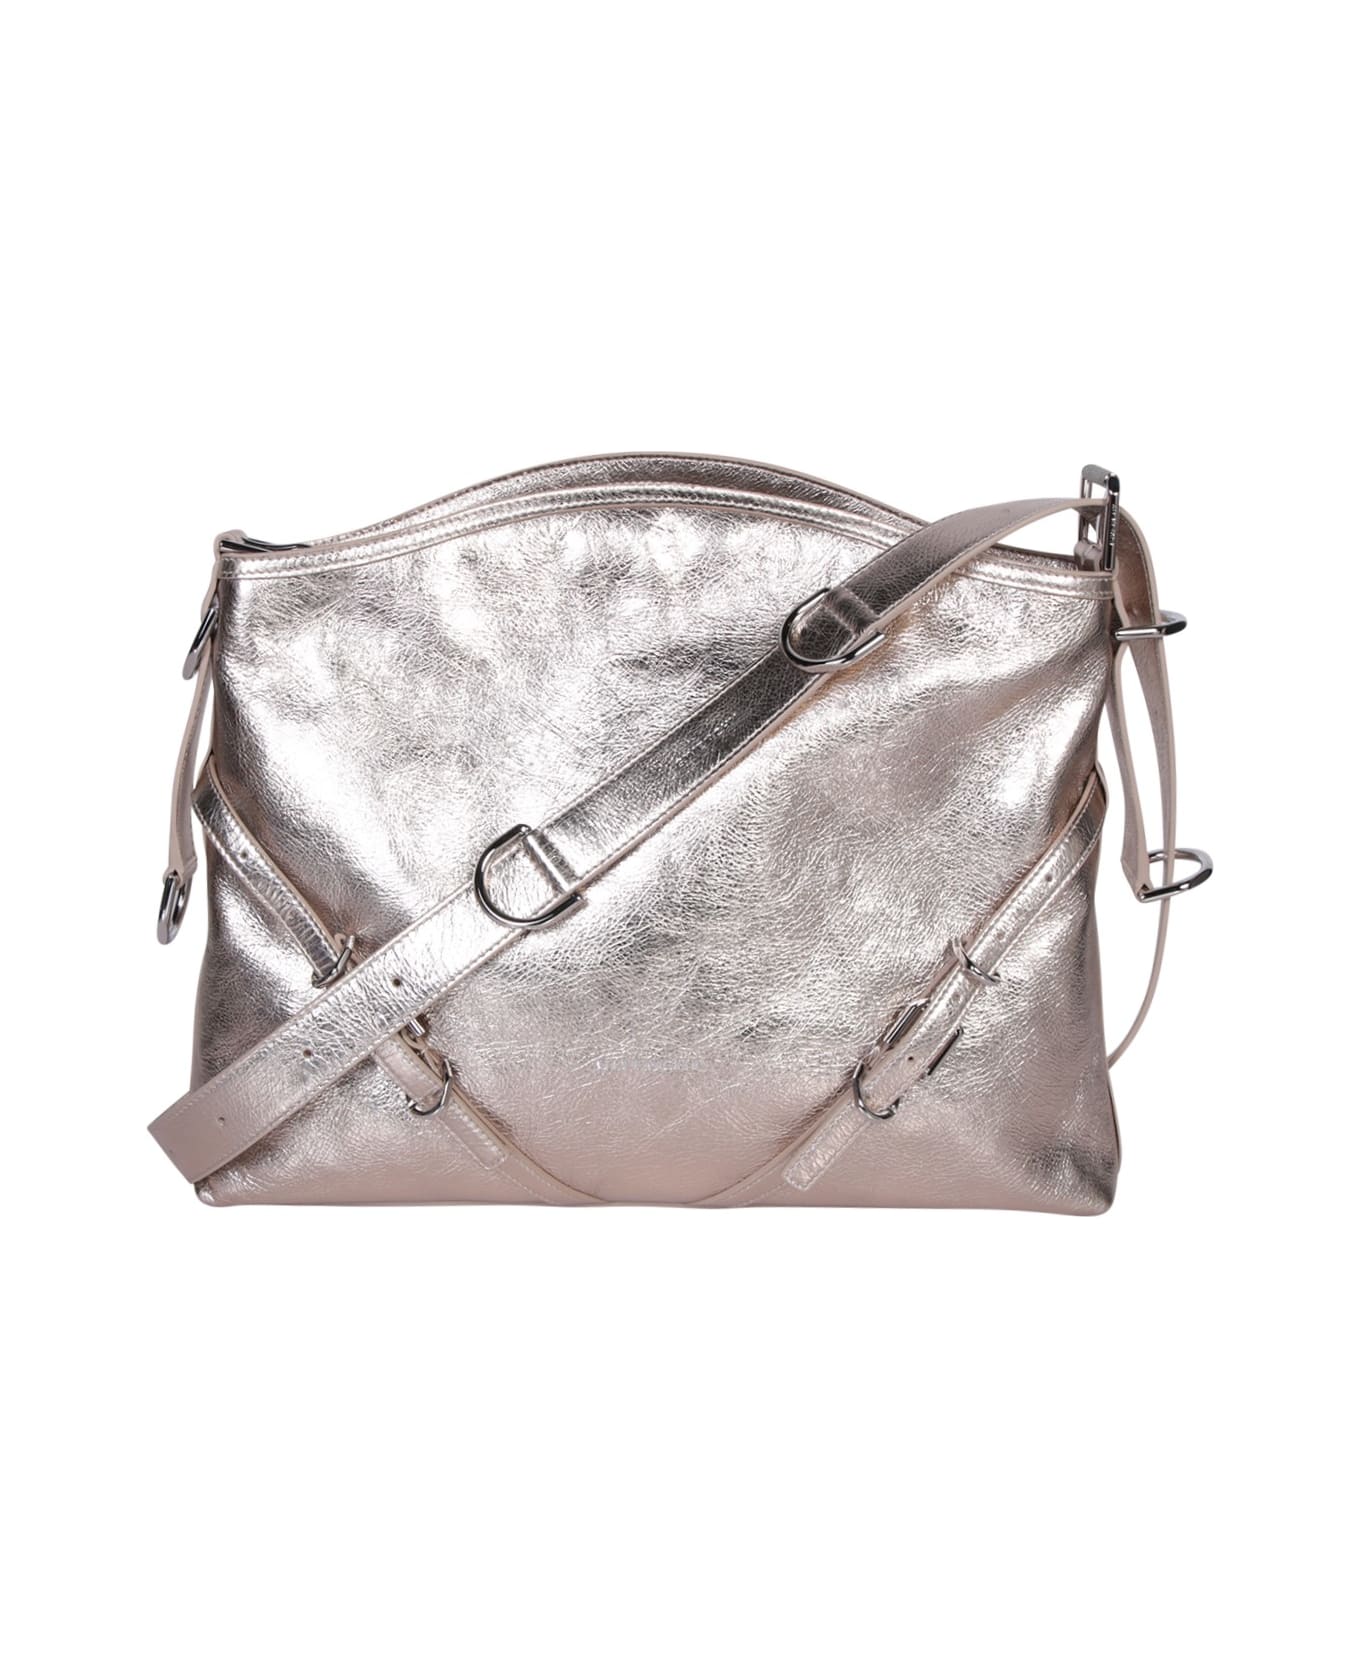 Givenchy Voyou Medium Bag - Metallic ショルダーバッグ